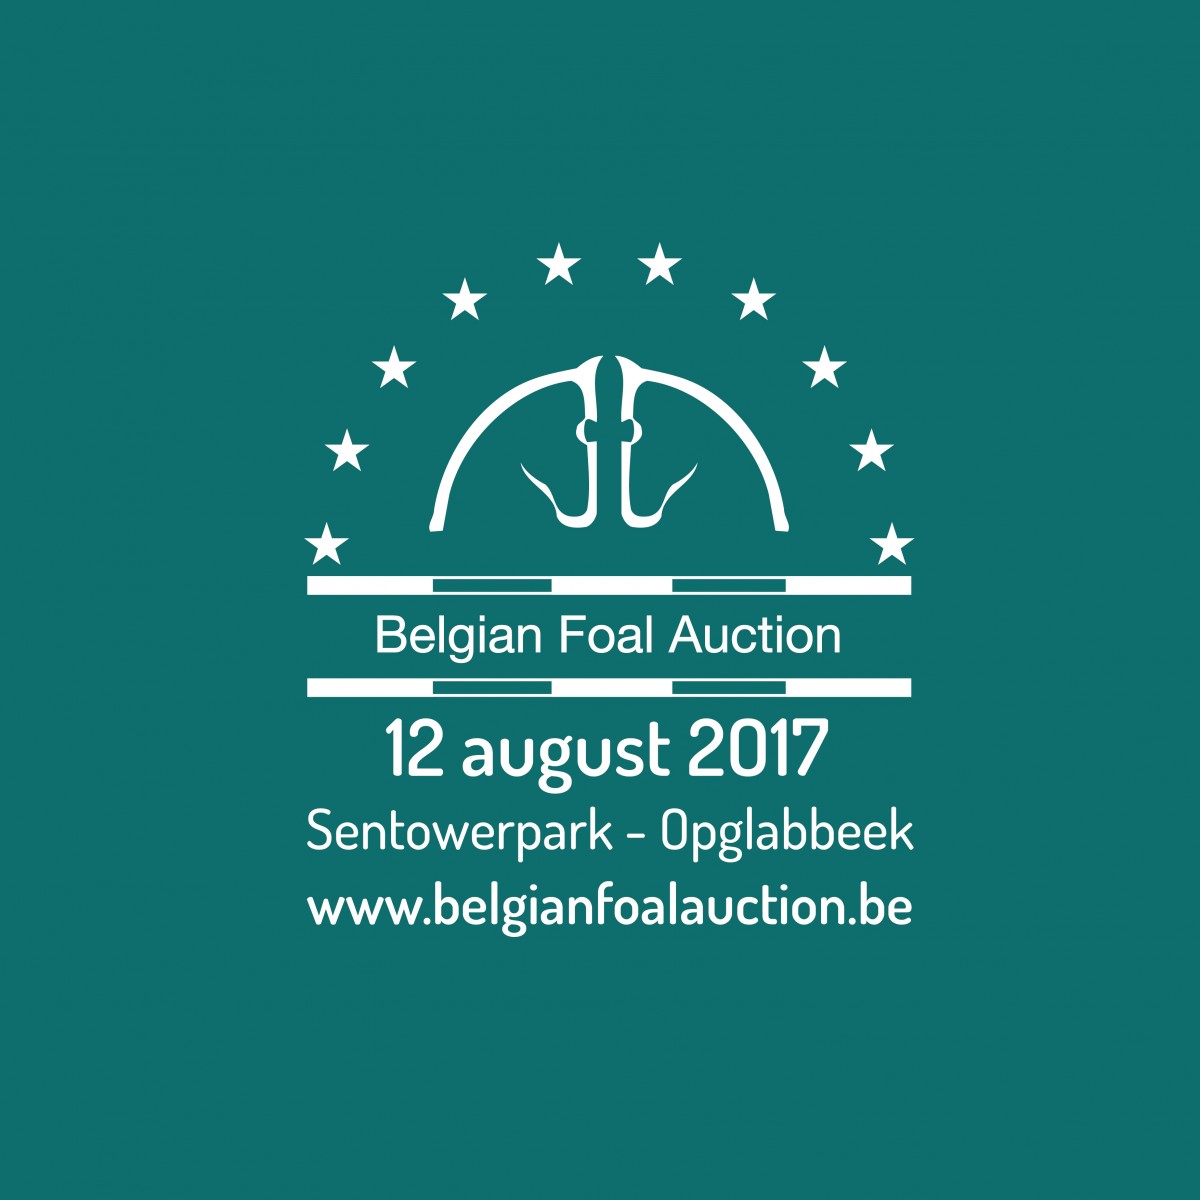 20ste editie Belgian Foal Auction belooft top-editie te worden!